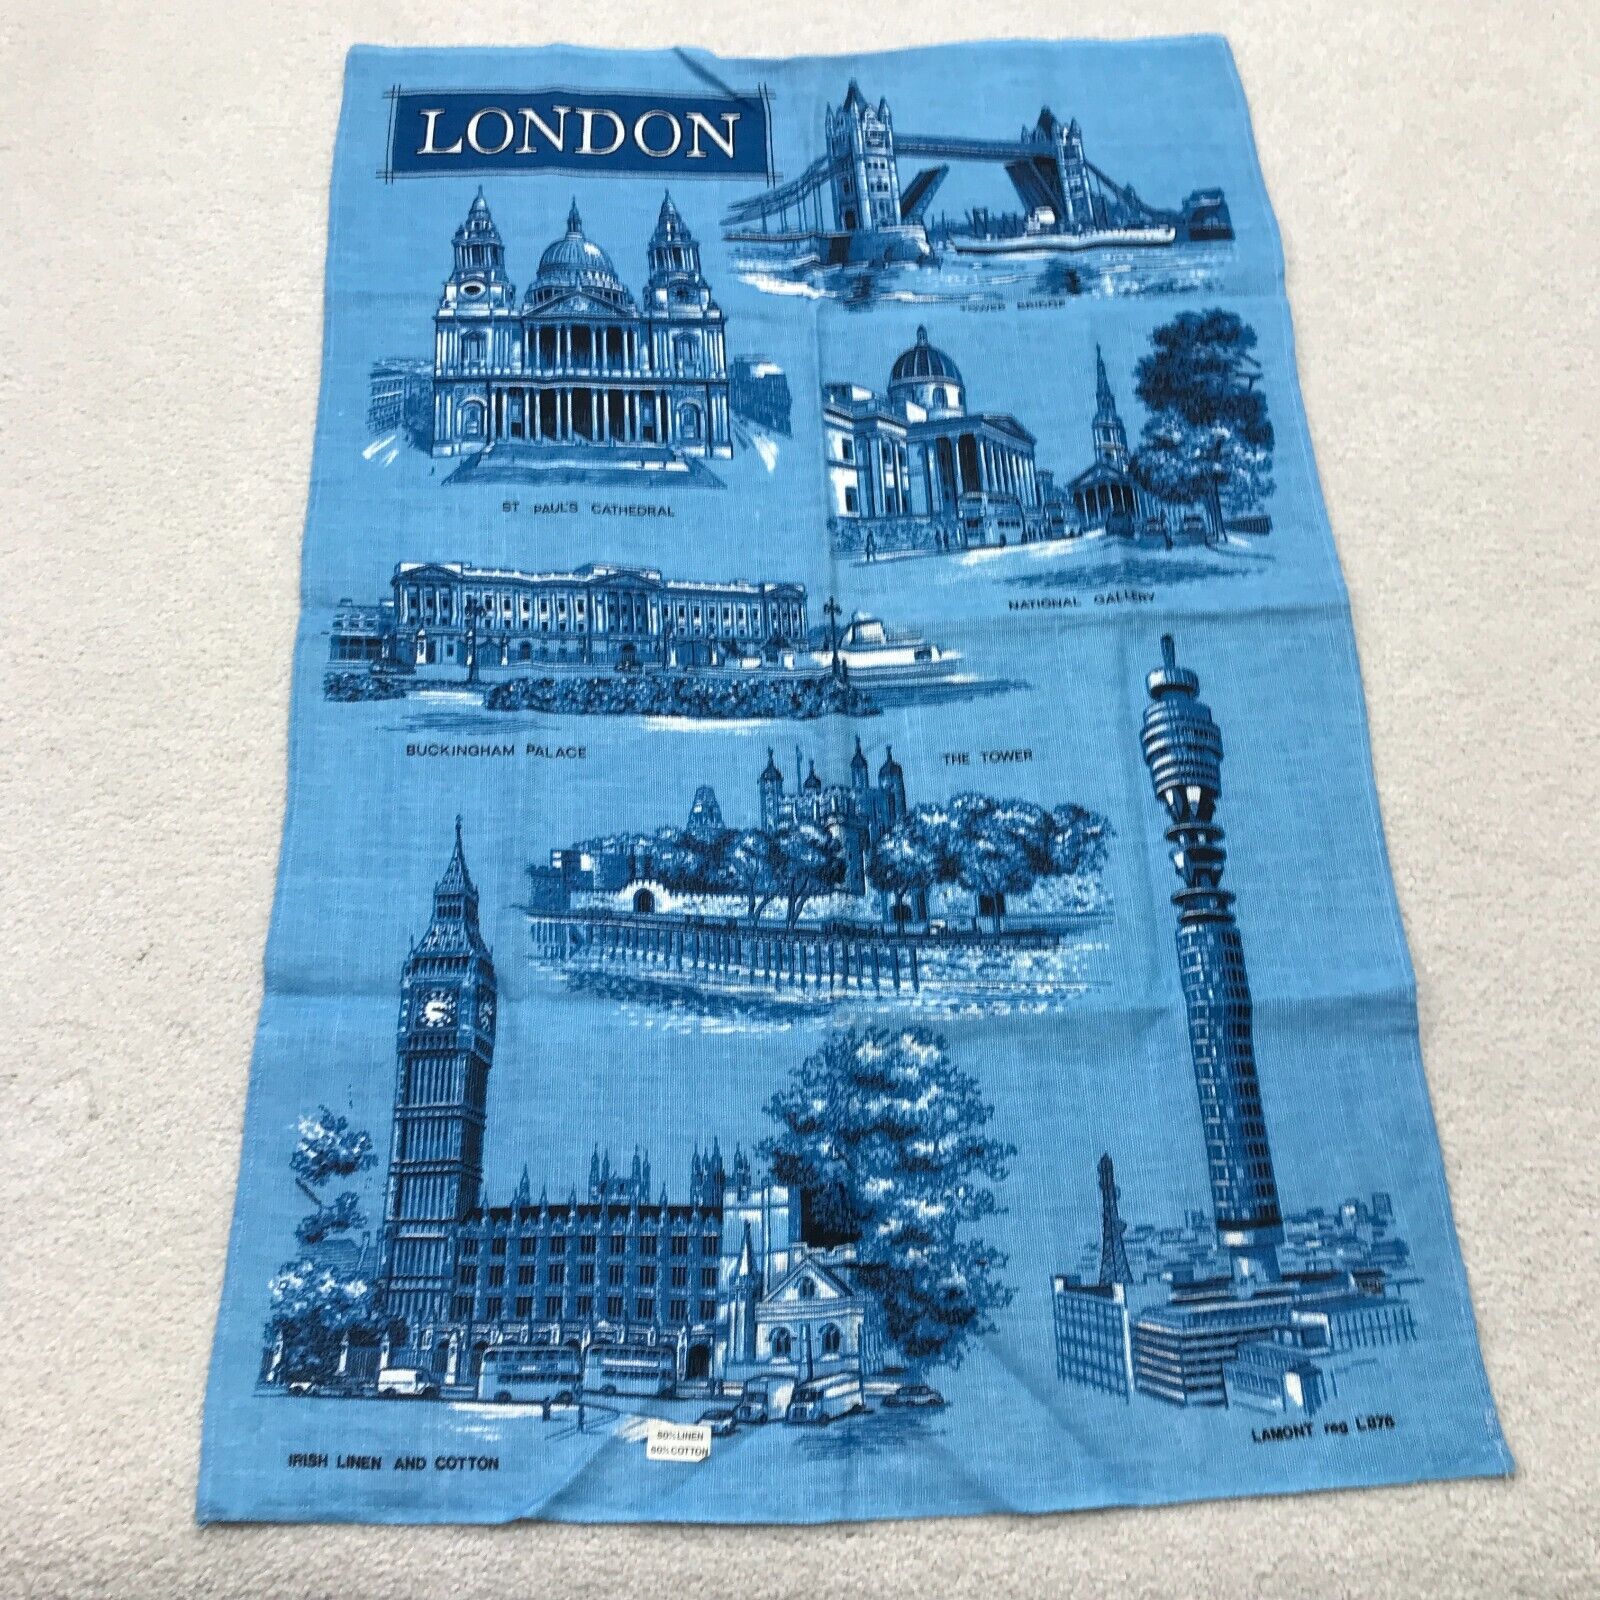 Vintage Lamont Tea Towel London Blue Irish Linen Cotton England Souvenir Travel